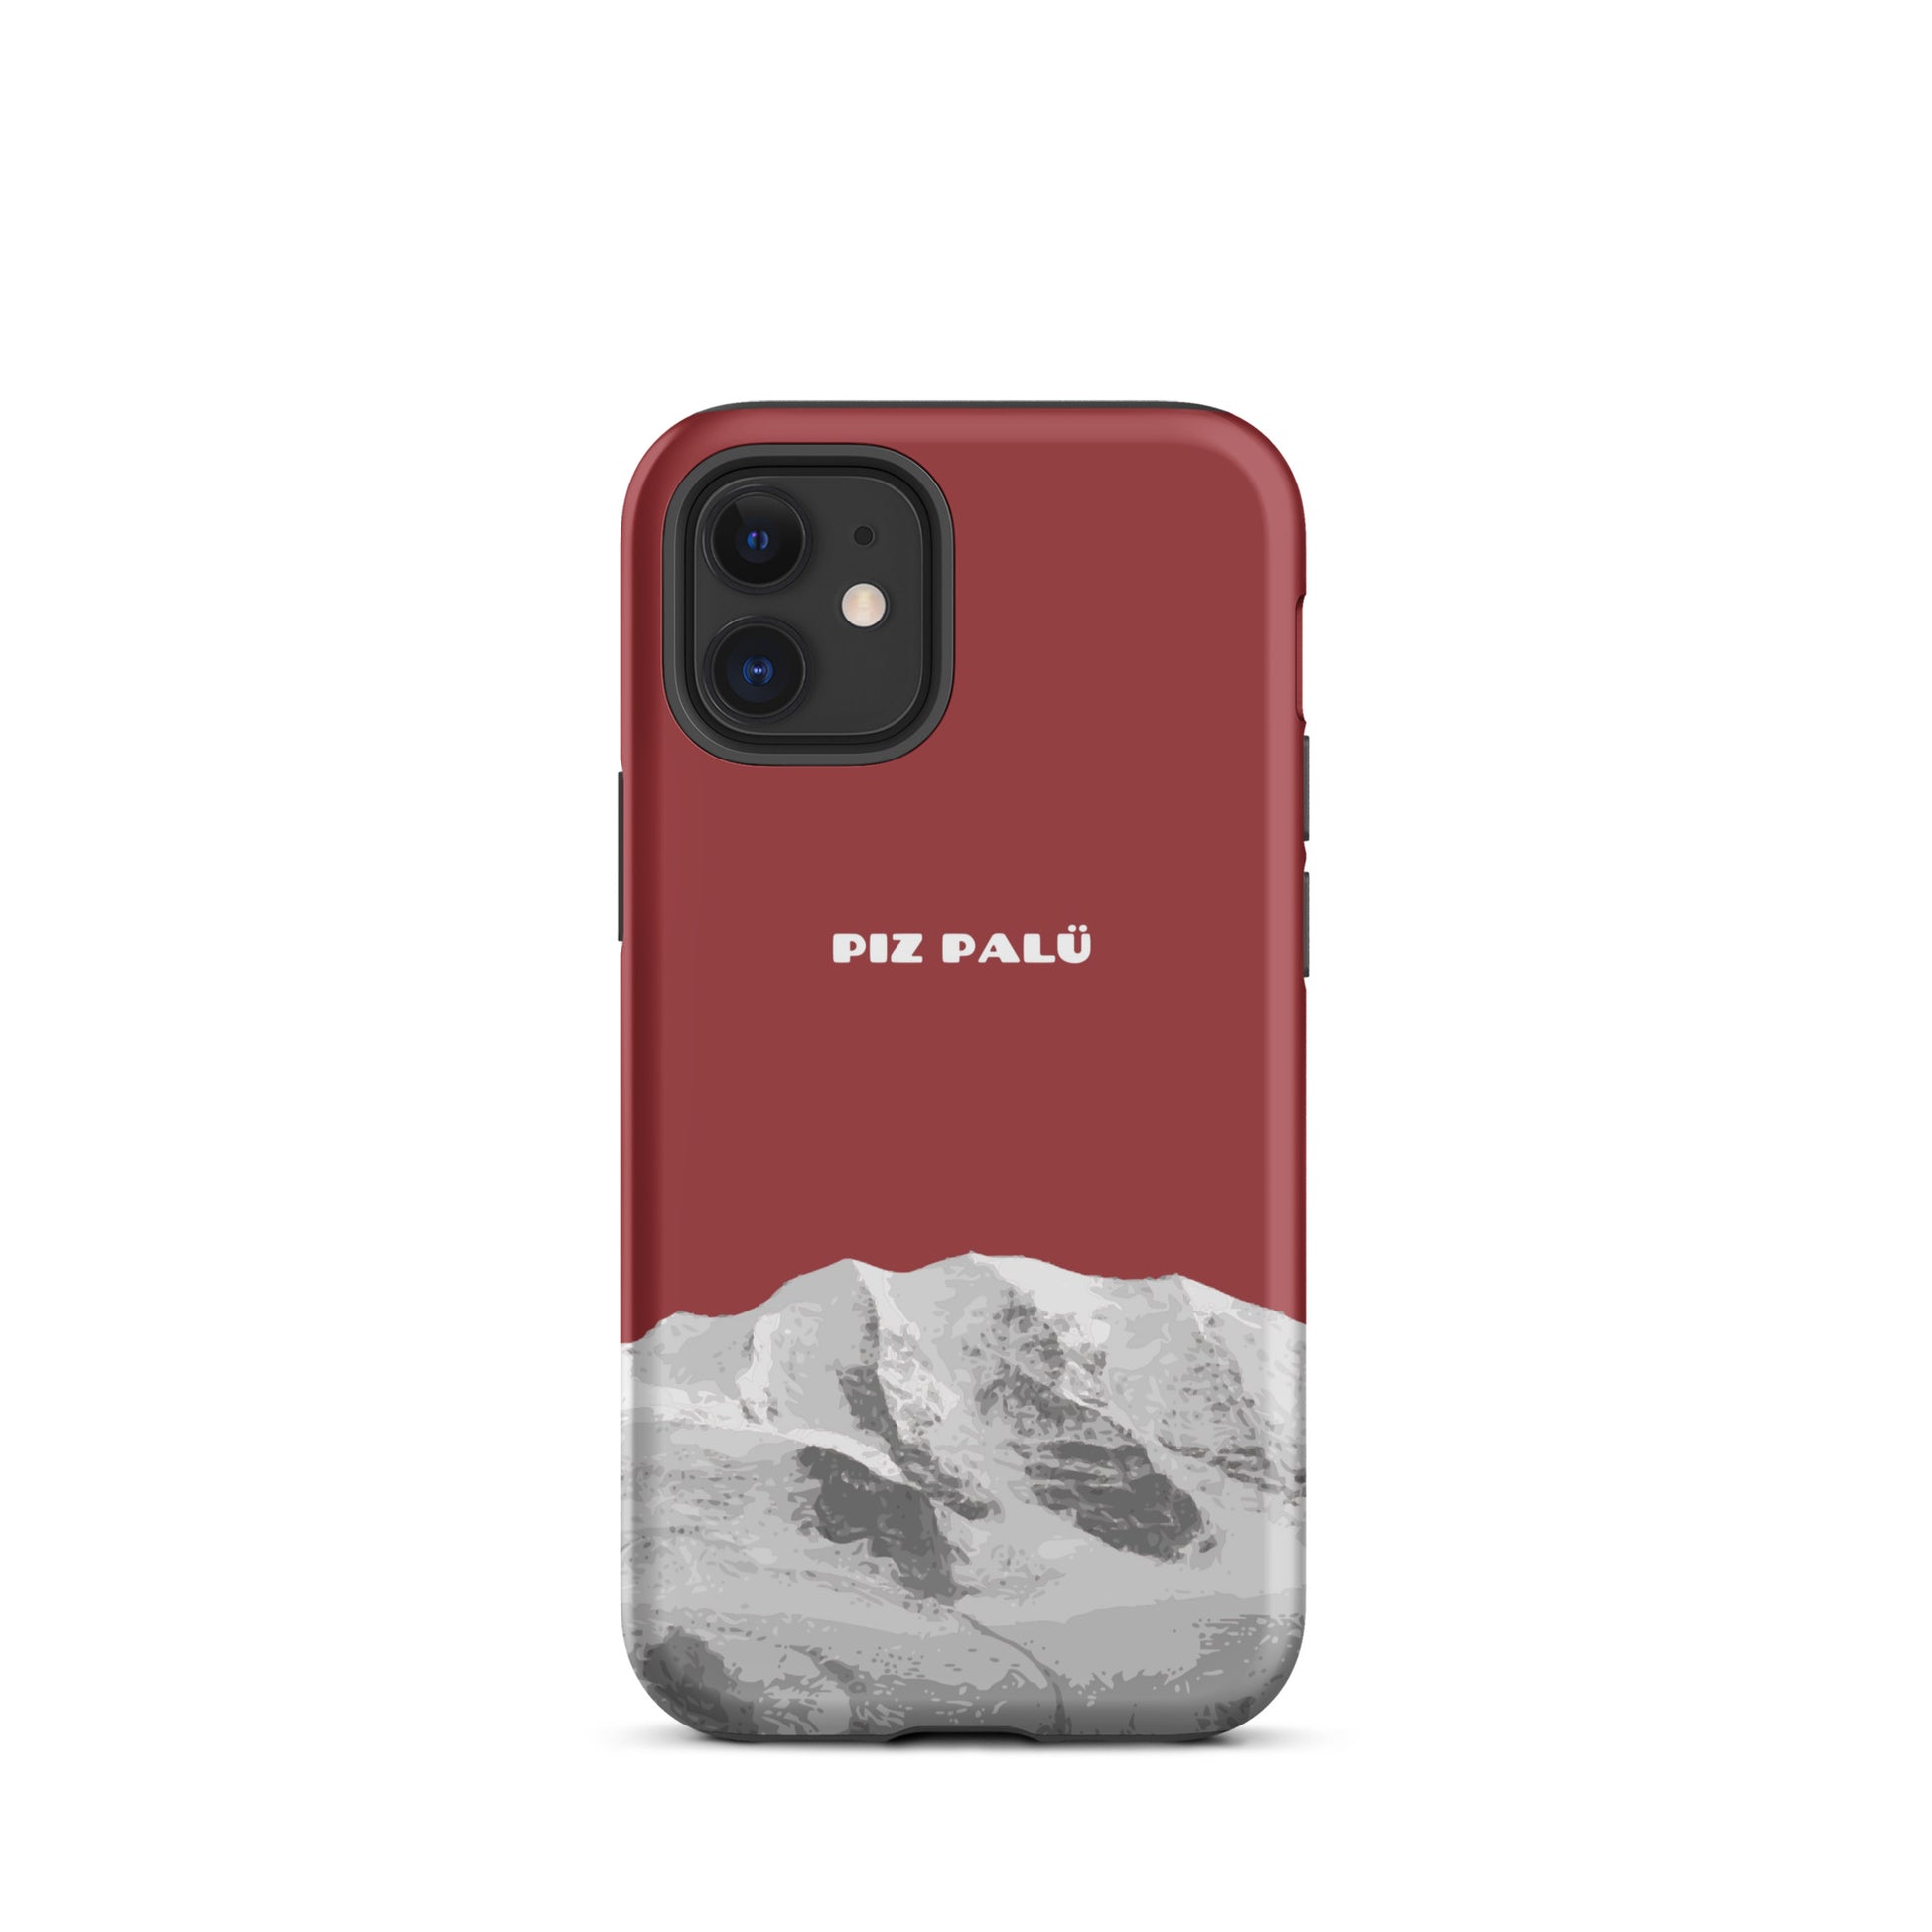 Hülle für das iPhone 12 Mini von Apple in der Farbe Rot, dass den Piz Palü in Graubünden zeigt.